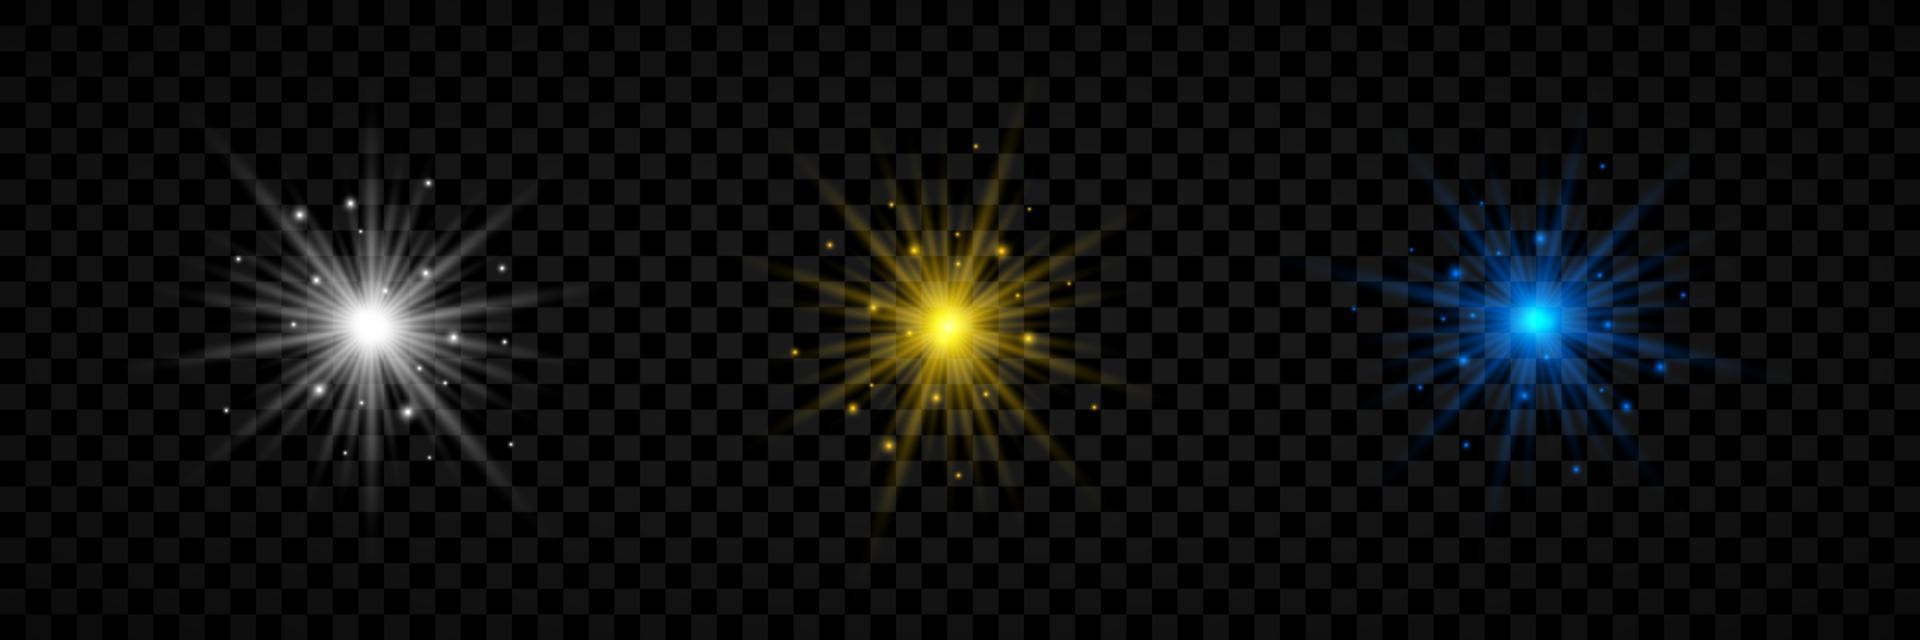 efecto de luz de destellos de lente. conjunto de tres luces brillantes blancas, amarillas y azules efectos de explosión estelar con destellos. ilustración vectorial vector